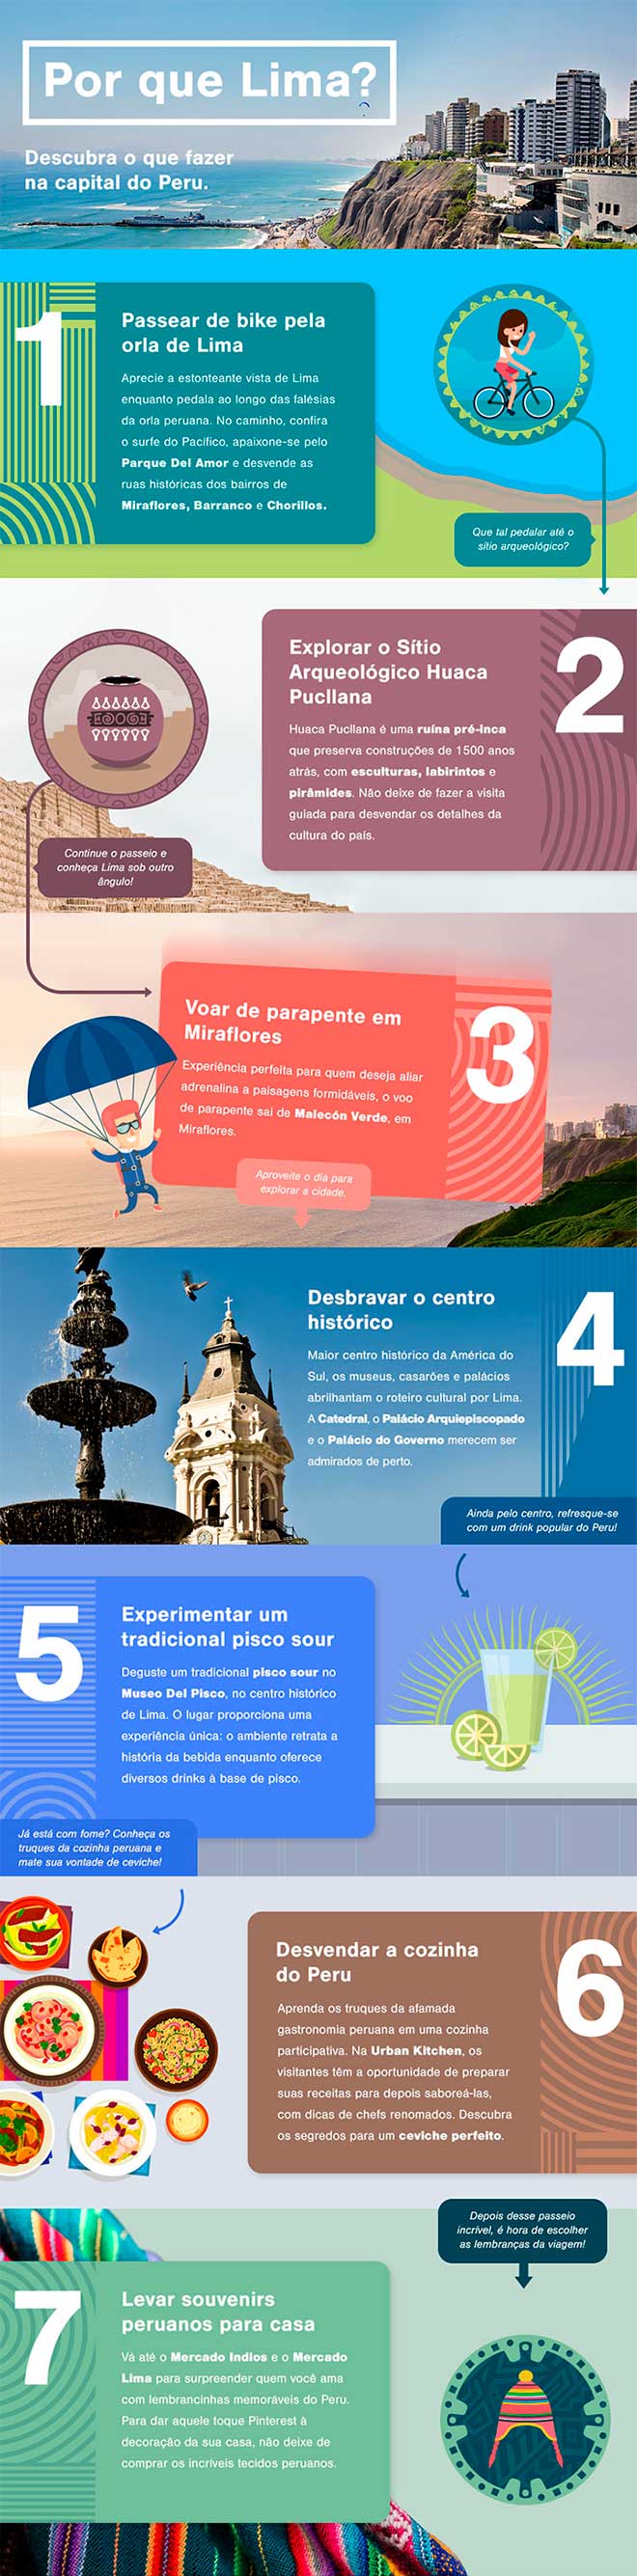 Infográfico com dicas do que fazer em Lima, no Peru